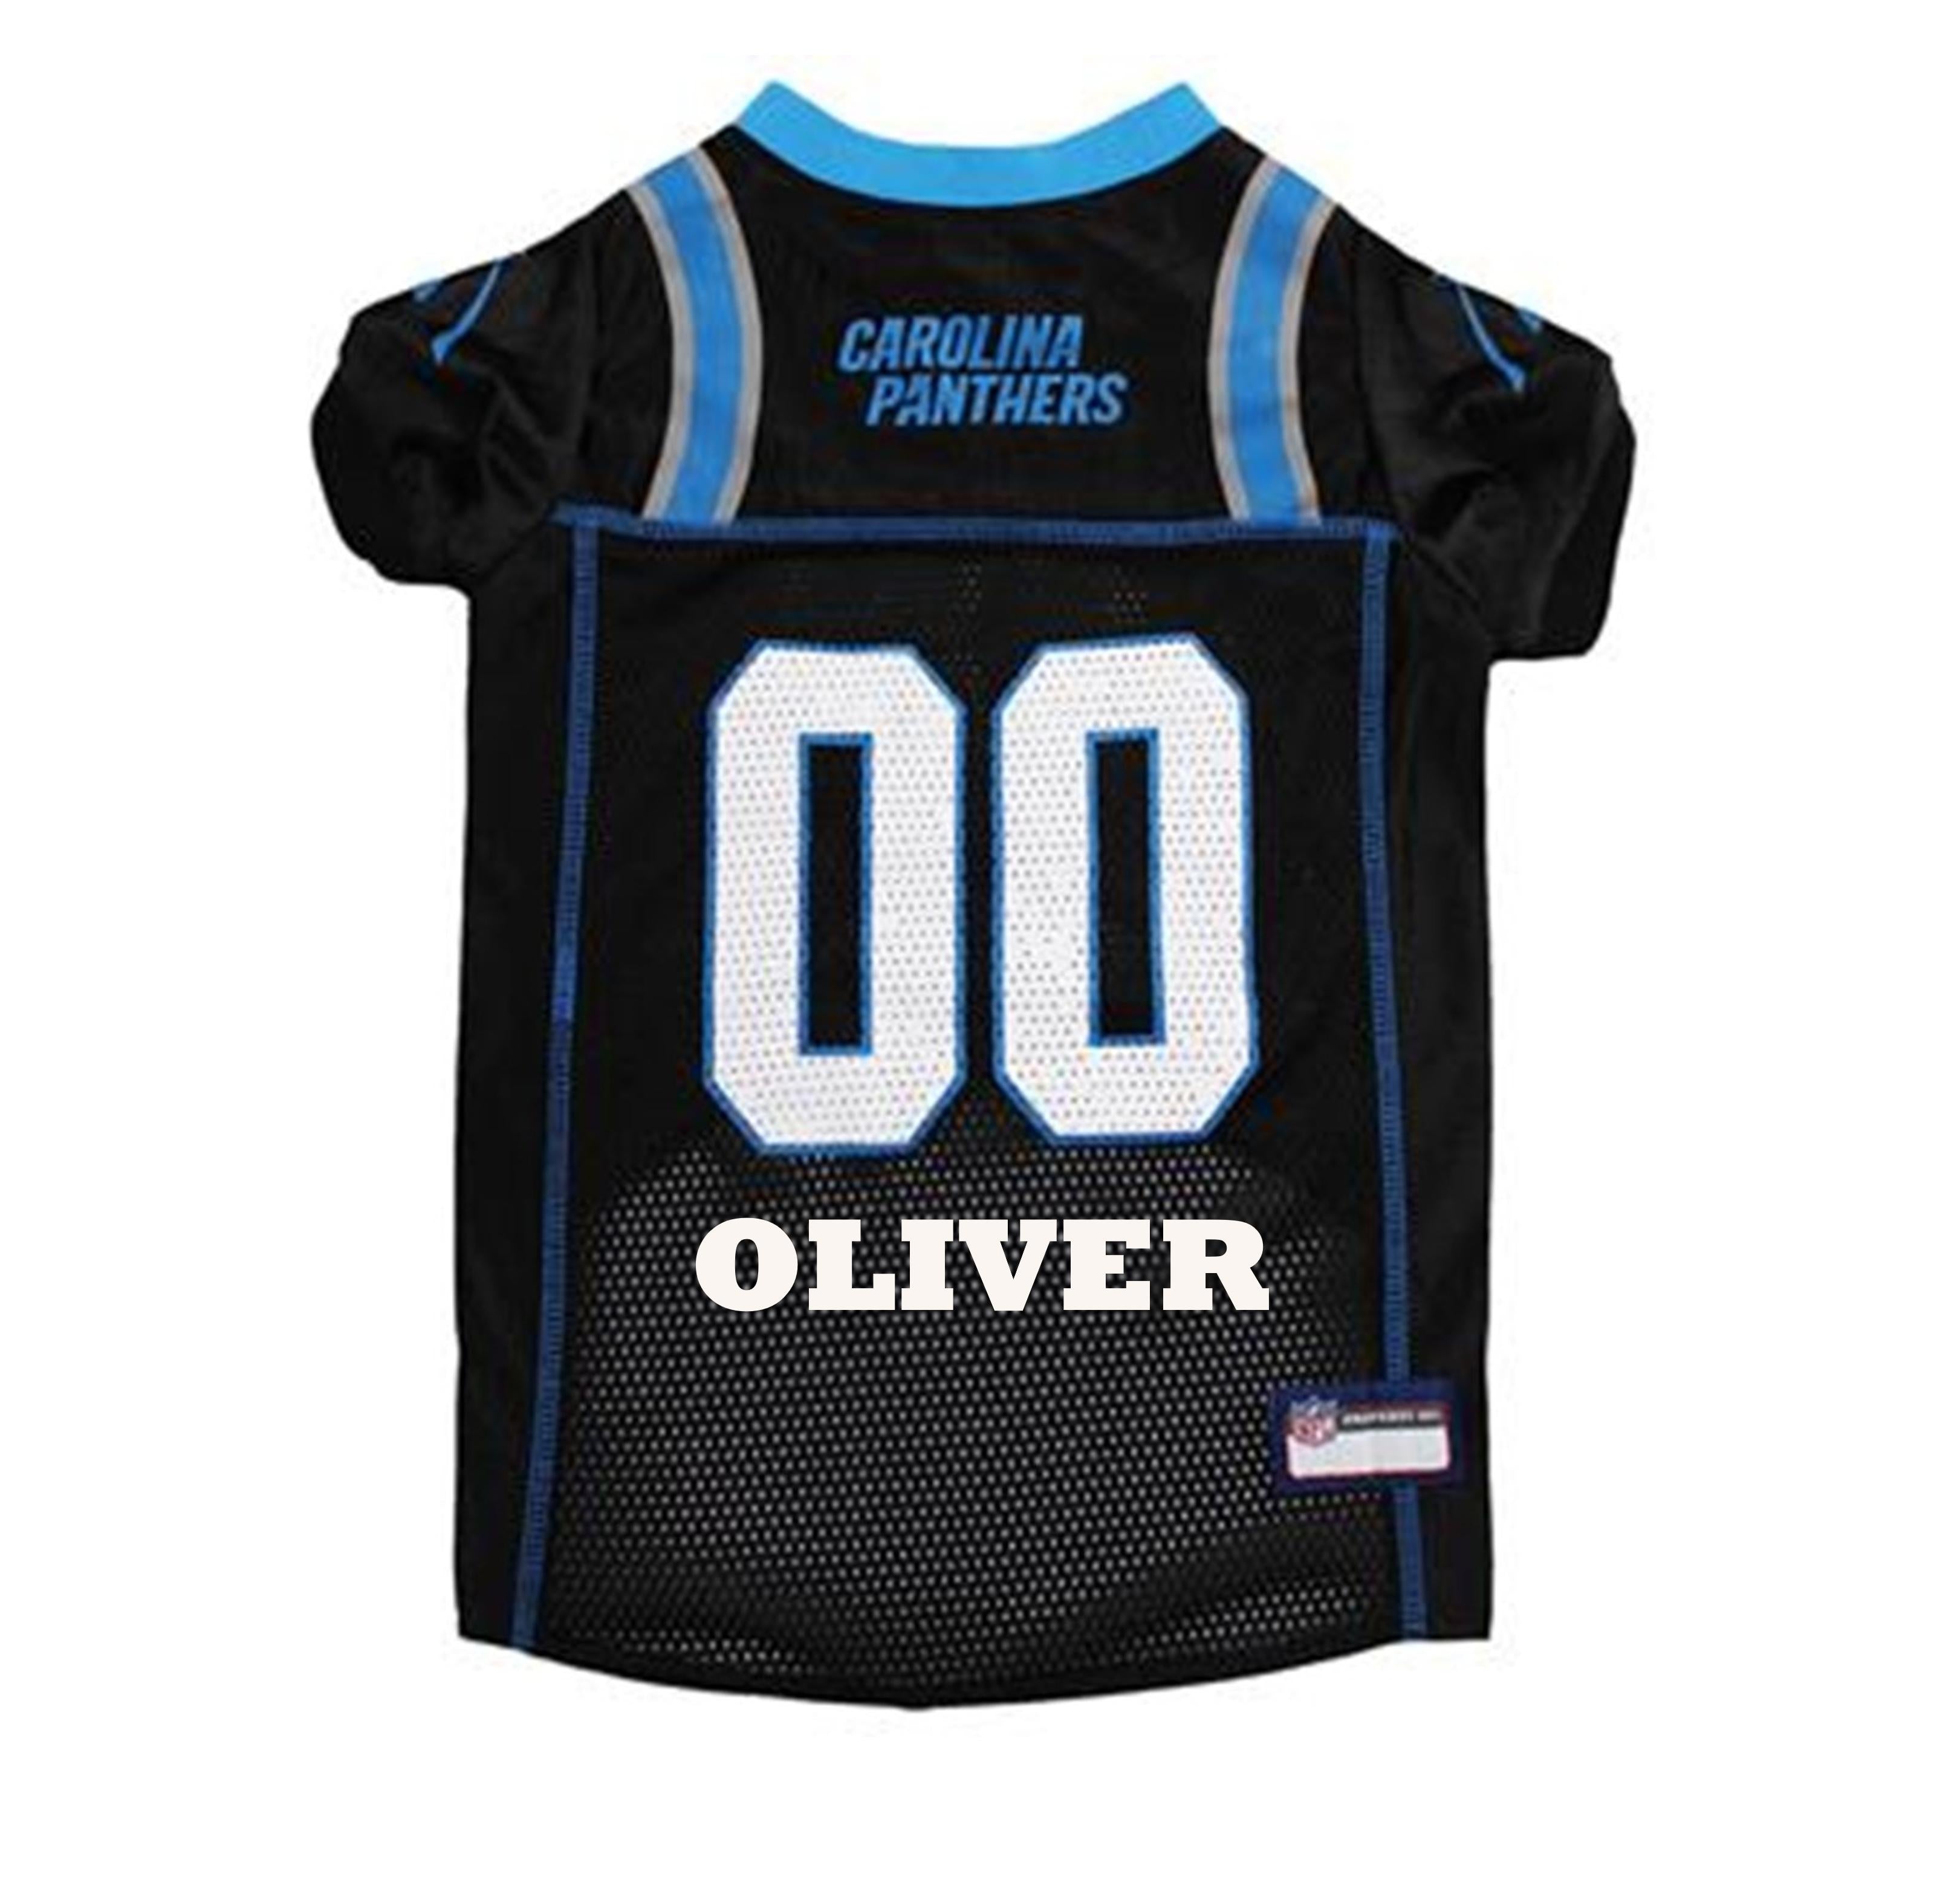 Carolina Panthers jersey numbers